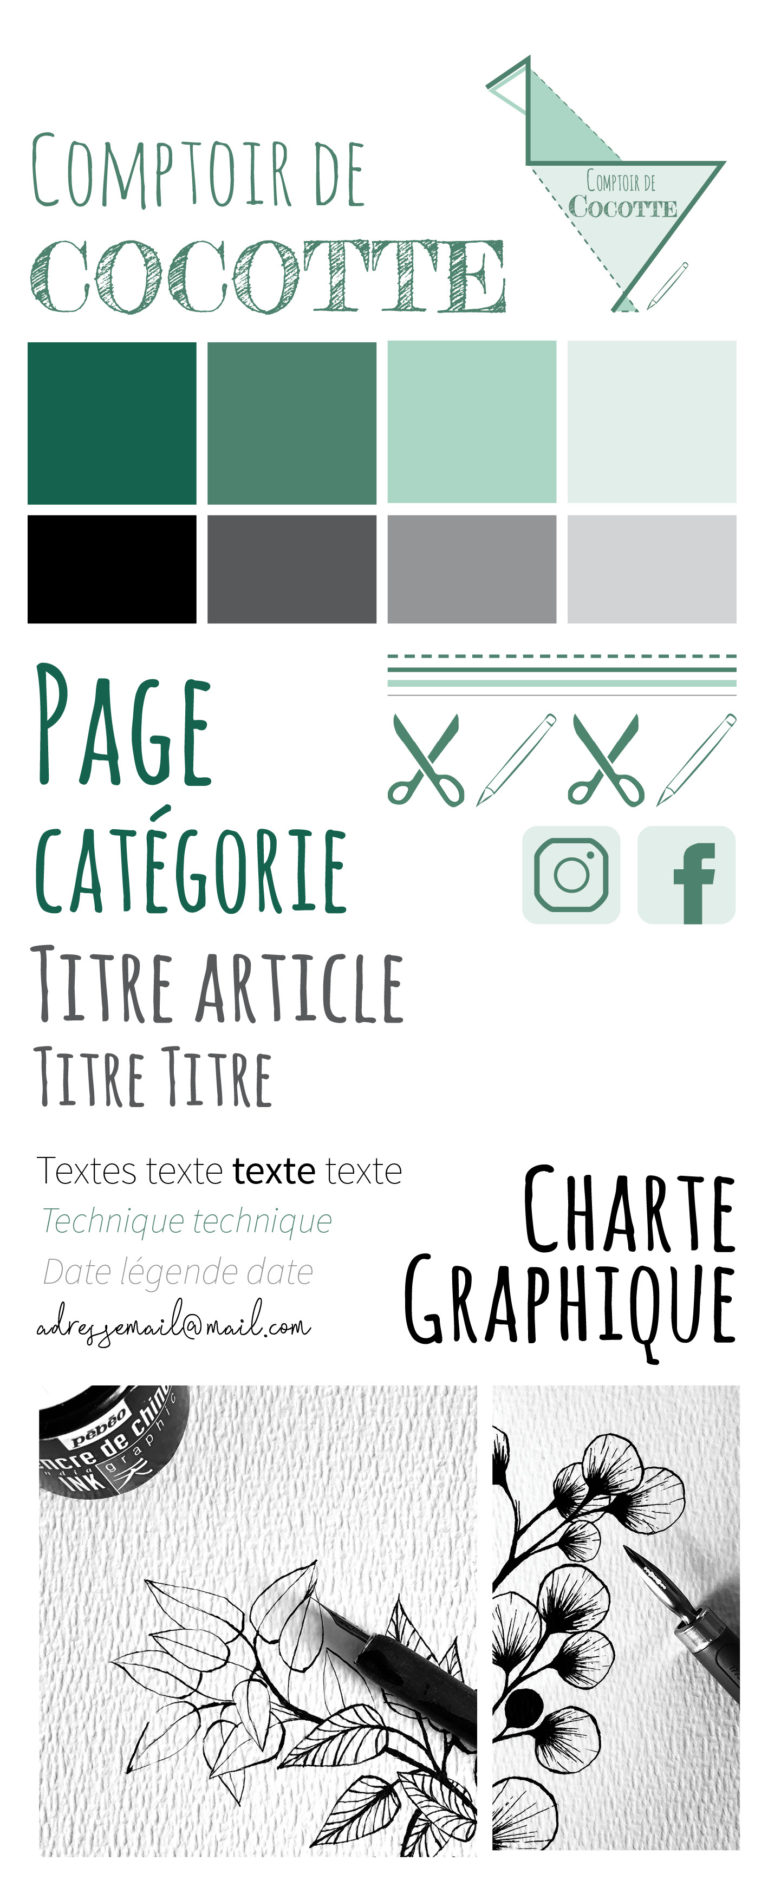 Charte Graphique Comptoir de Cocotte